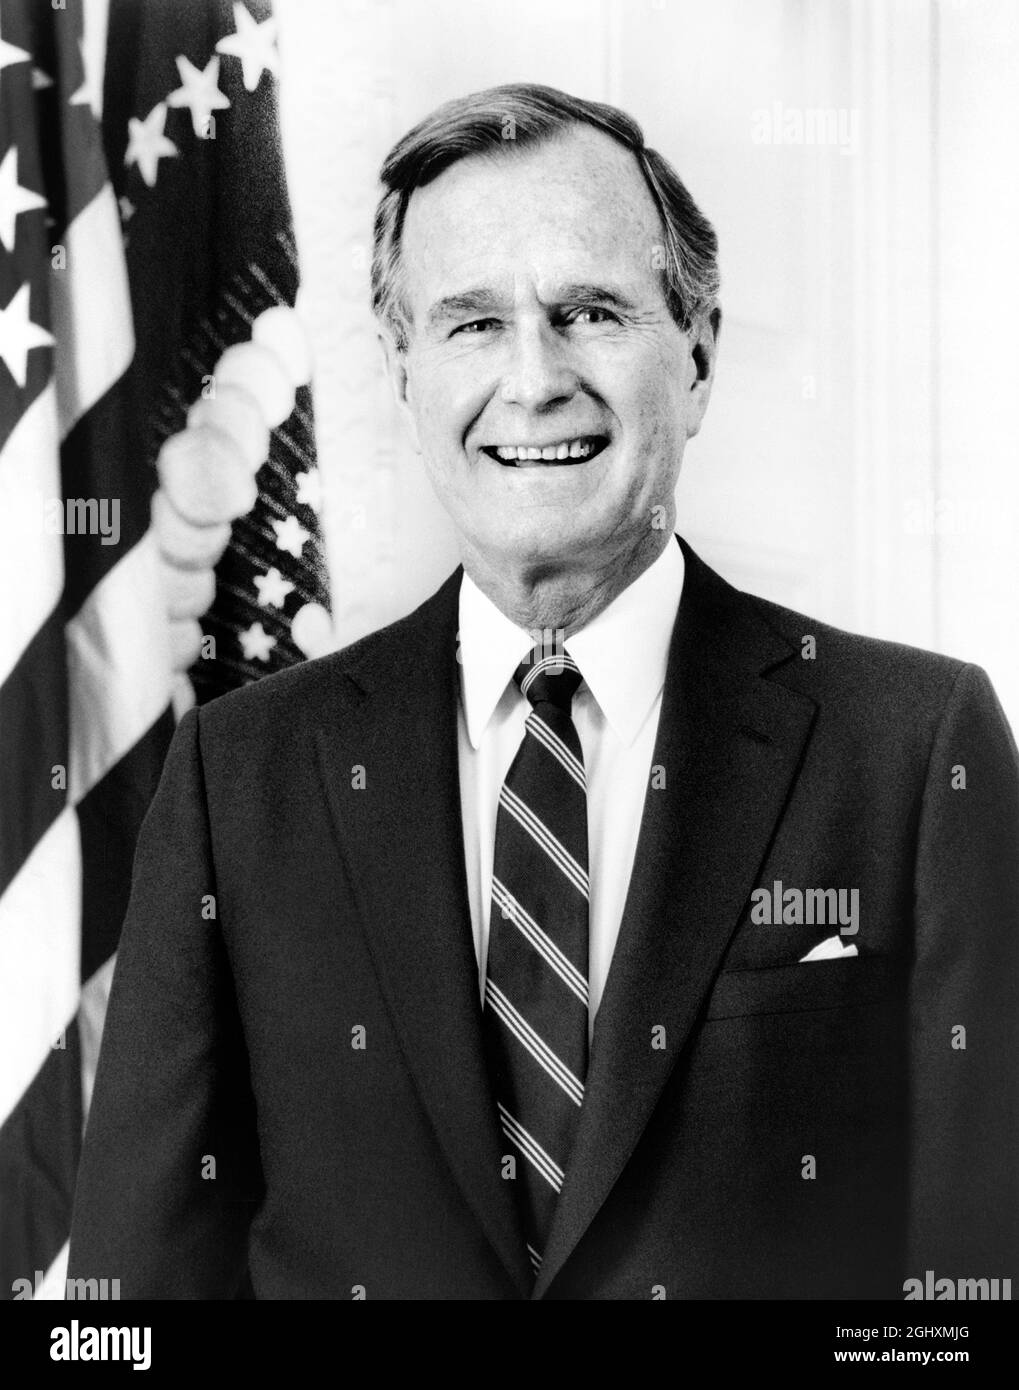 El Presidente de los Estados Unidos, George H.W. Bush, Retrato de media longitud junto a la Bandera Americana, Washington, D.C., EE.UU., David Valdez, 1989 Foto de stock